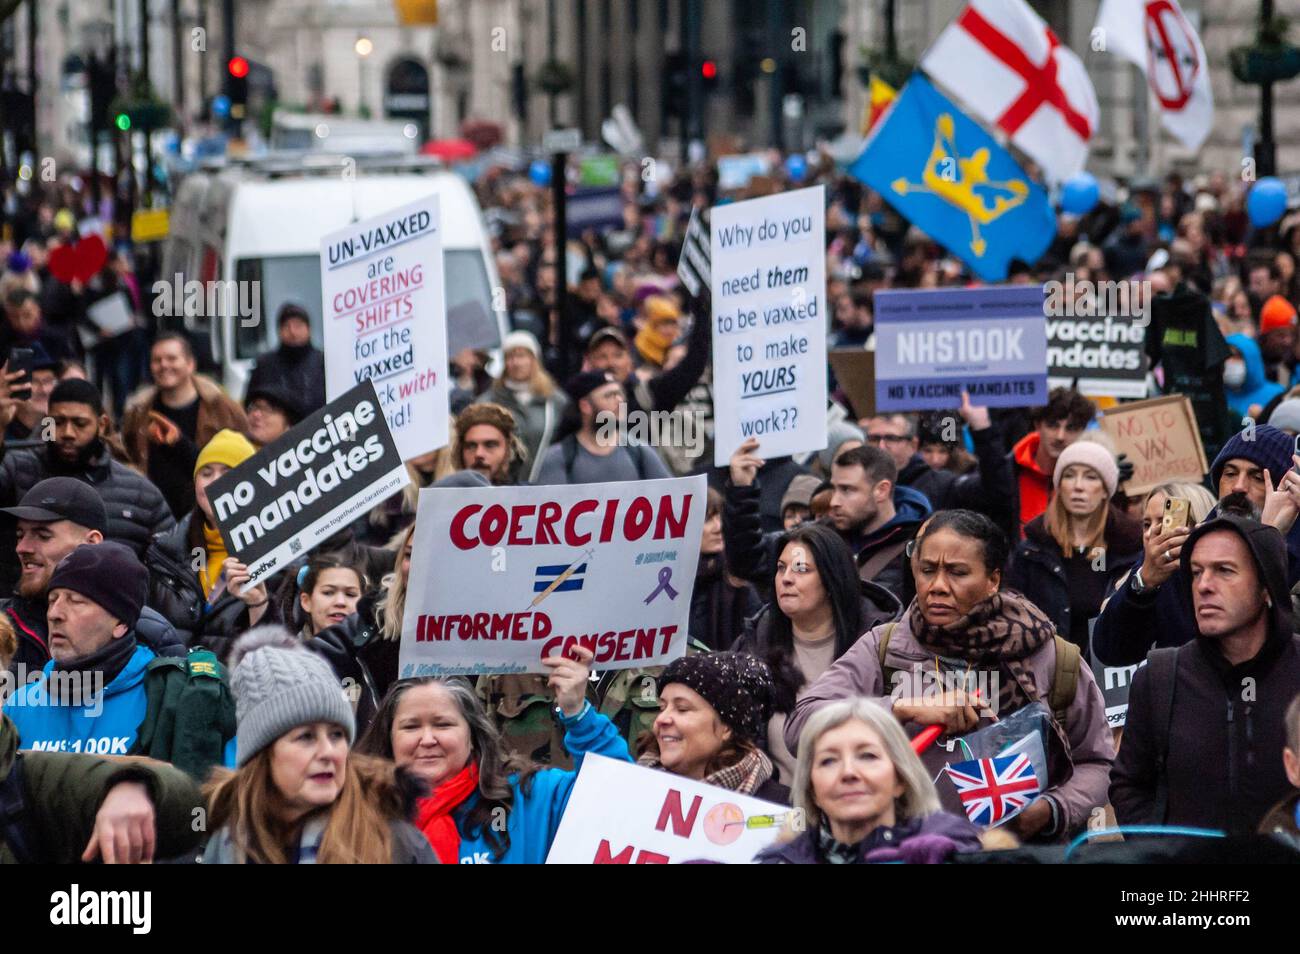 LONDRA, INGHILTERRA- 22 gennaio 2022: I manifestanti che hanno partecipato alla protesta del NHS100K contro i mandati di vaccinazione Foto Stock